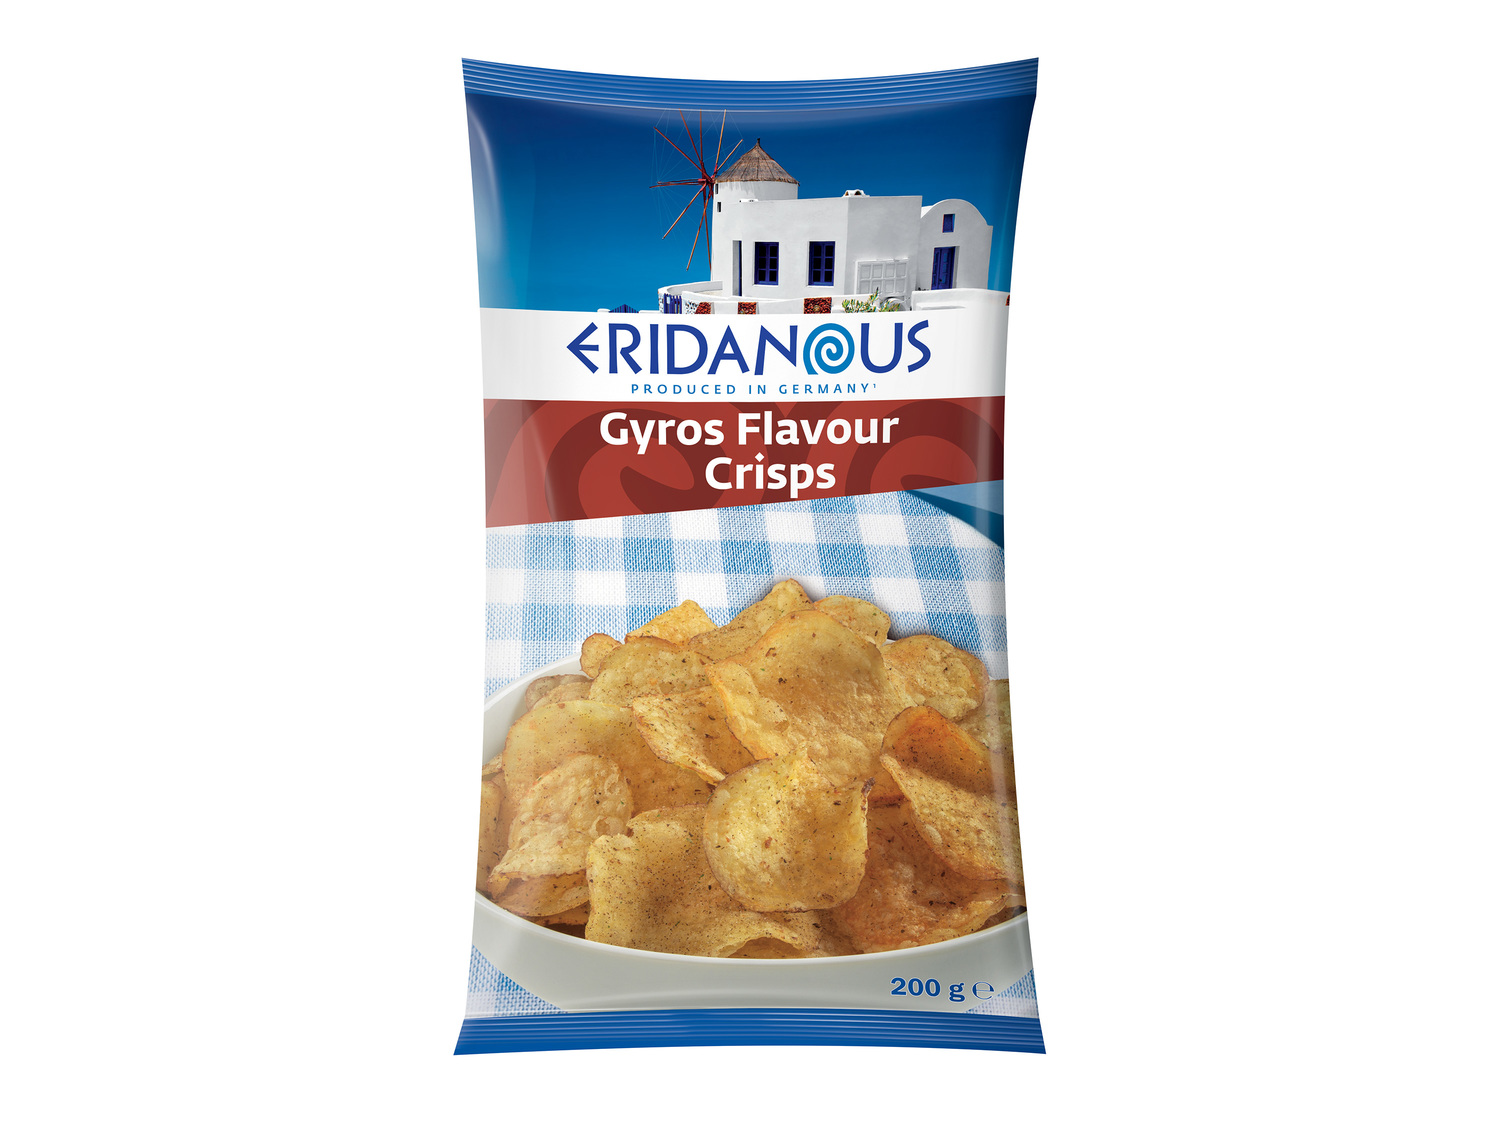 Chips1 , le prix 0.99 €  
-  Au choix : goût tzatziki ou gyros